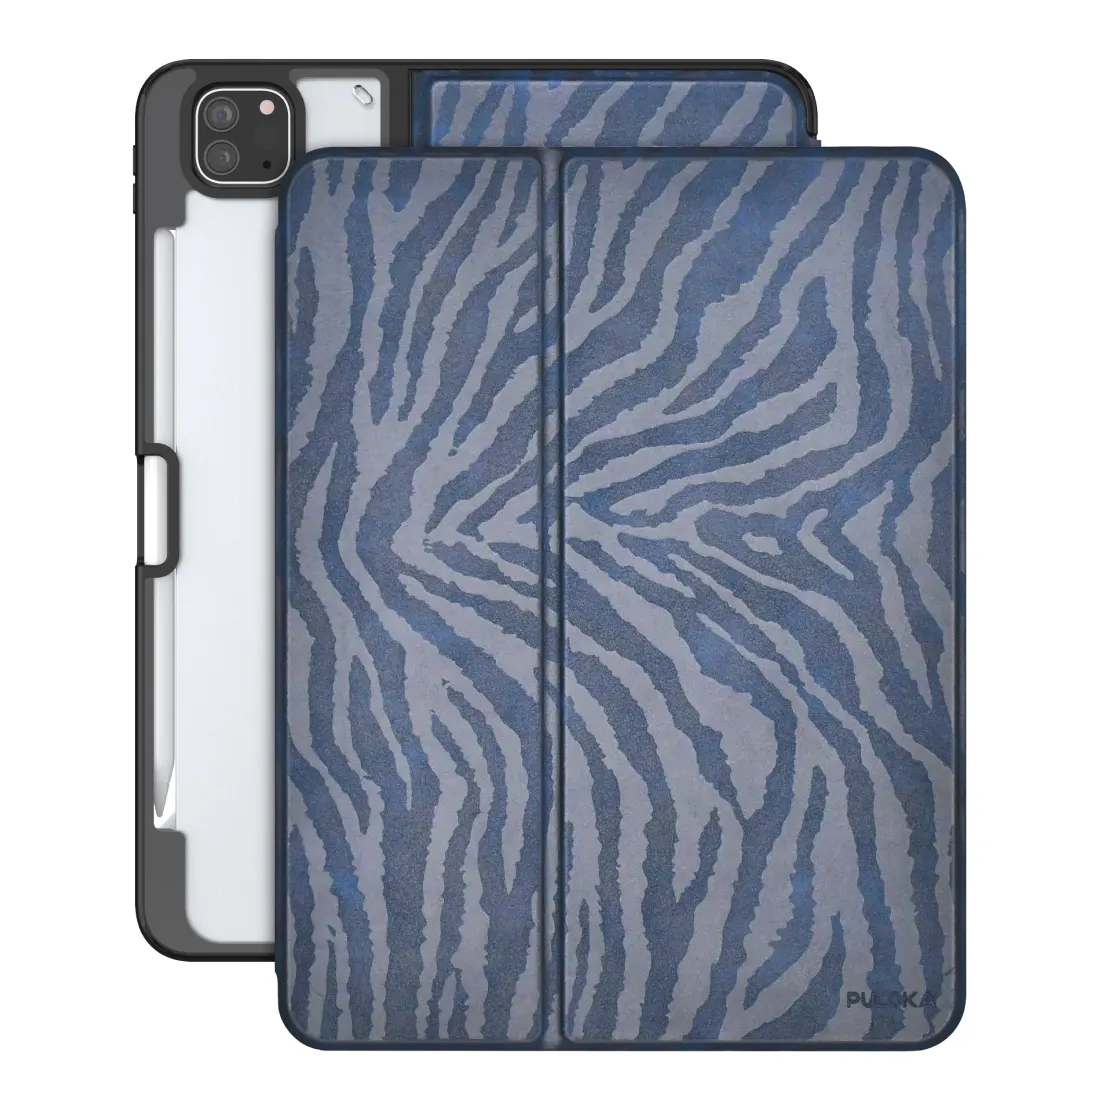 PULOKA Cover posteriore trasparente per la generazione iPad custodia protettiva in pelle Zebra con portamatite antiurto protettivo